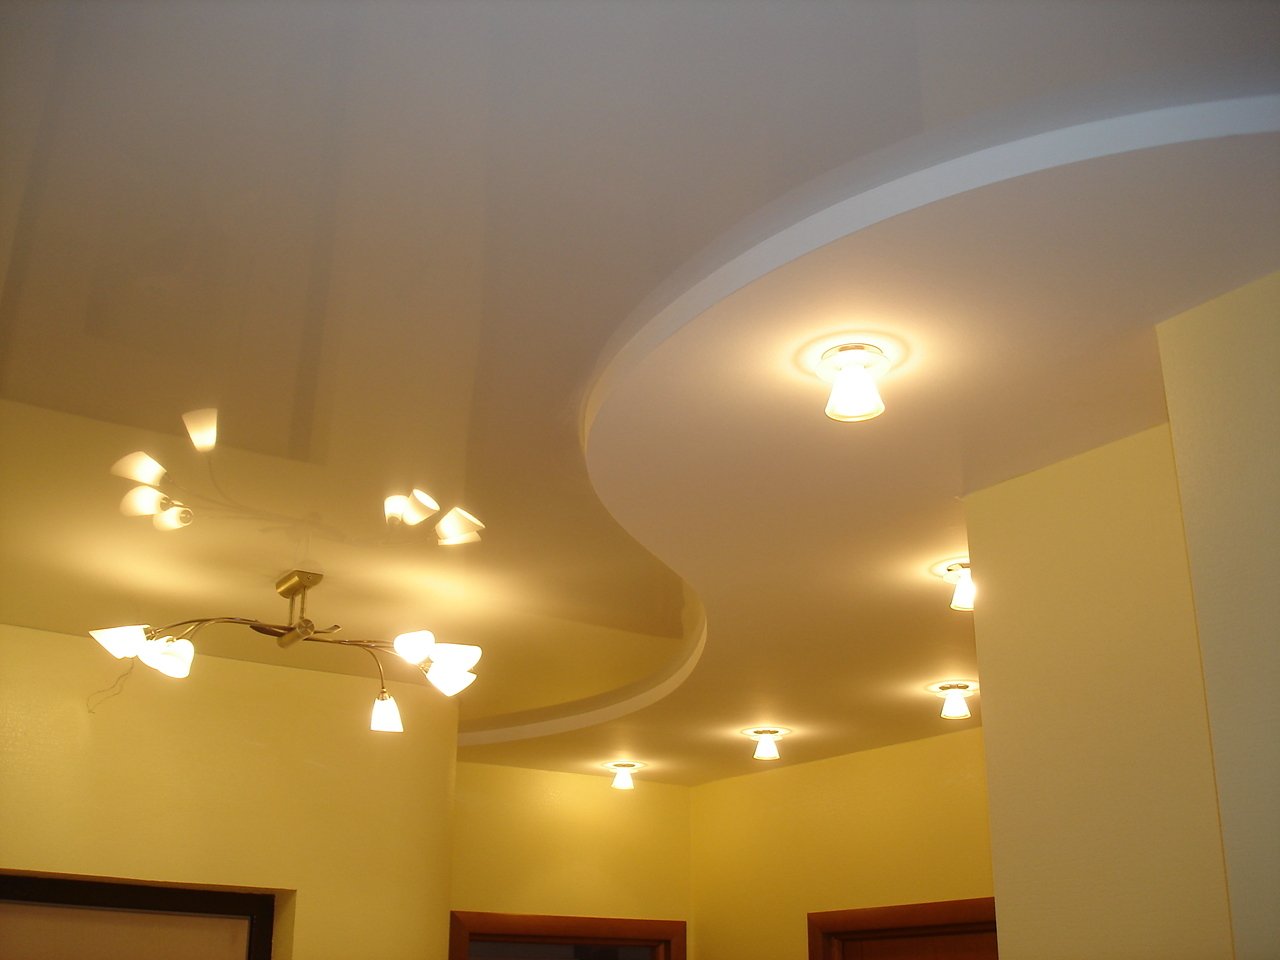 Какой потолок лучше: натяжной или из гипсокартона, под покраску или другой